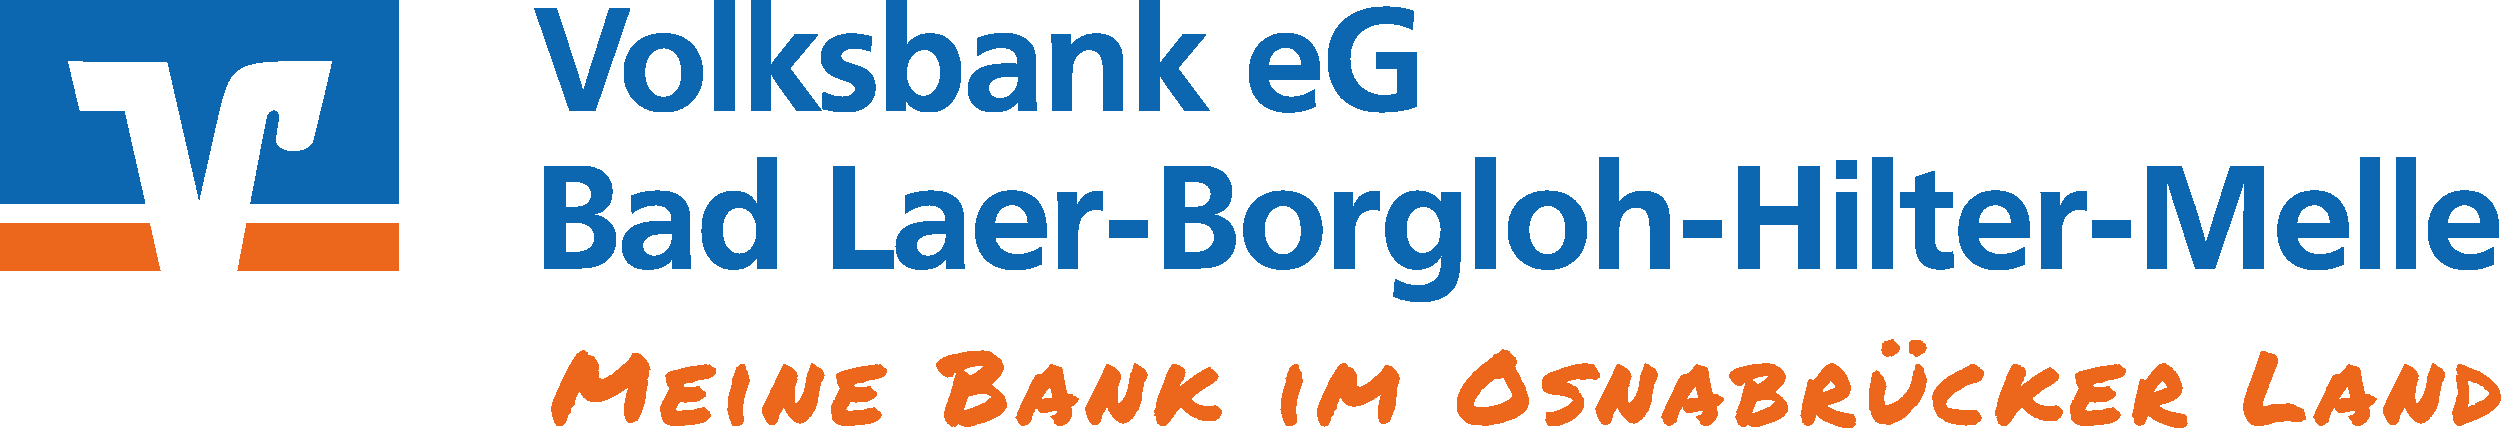 Volksbank eG Blog